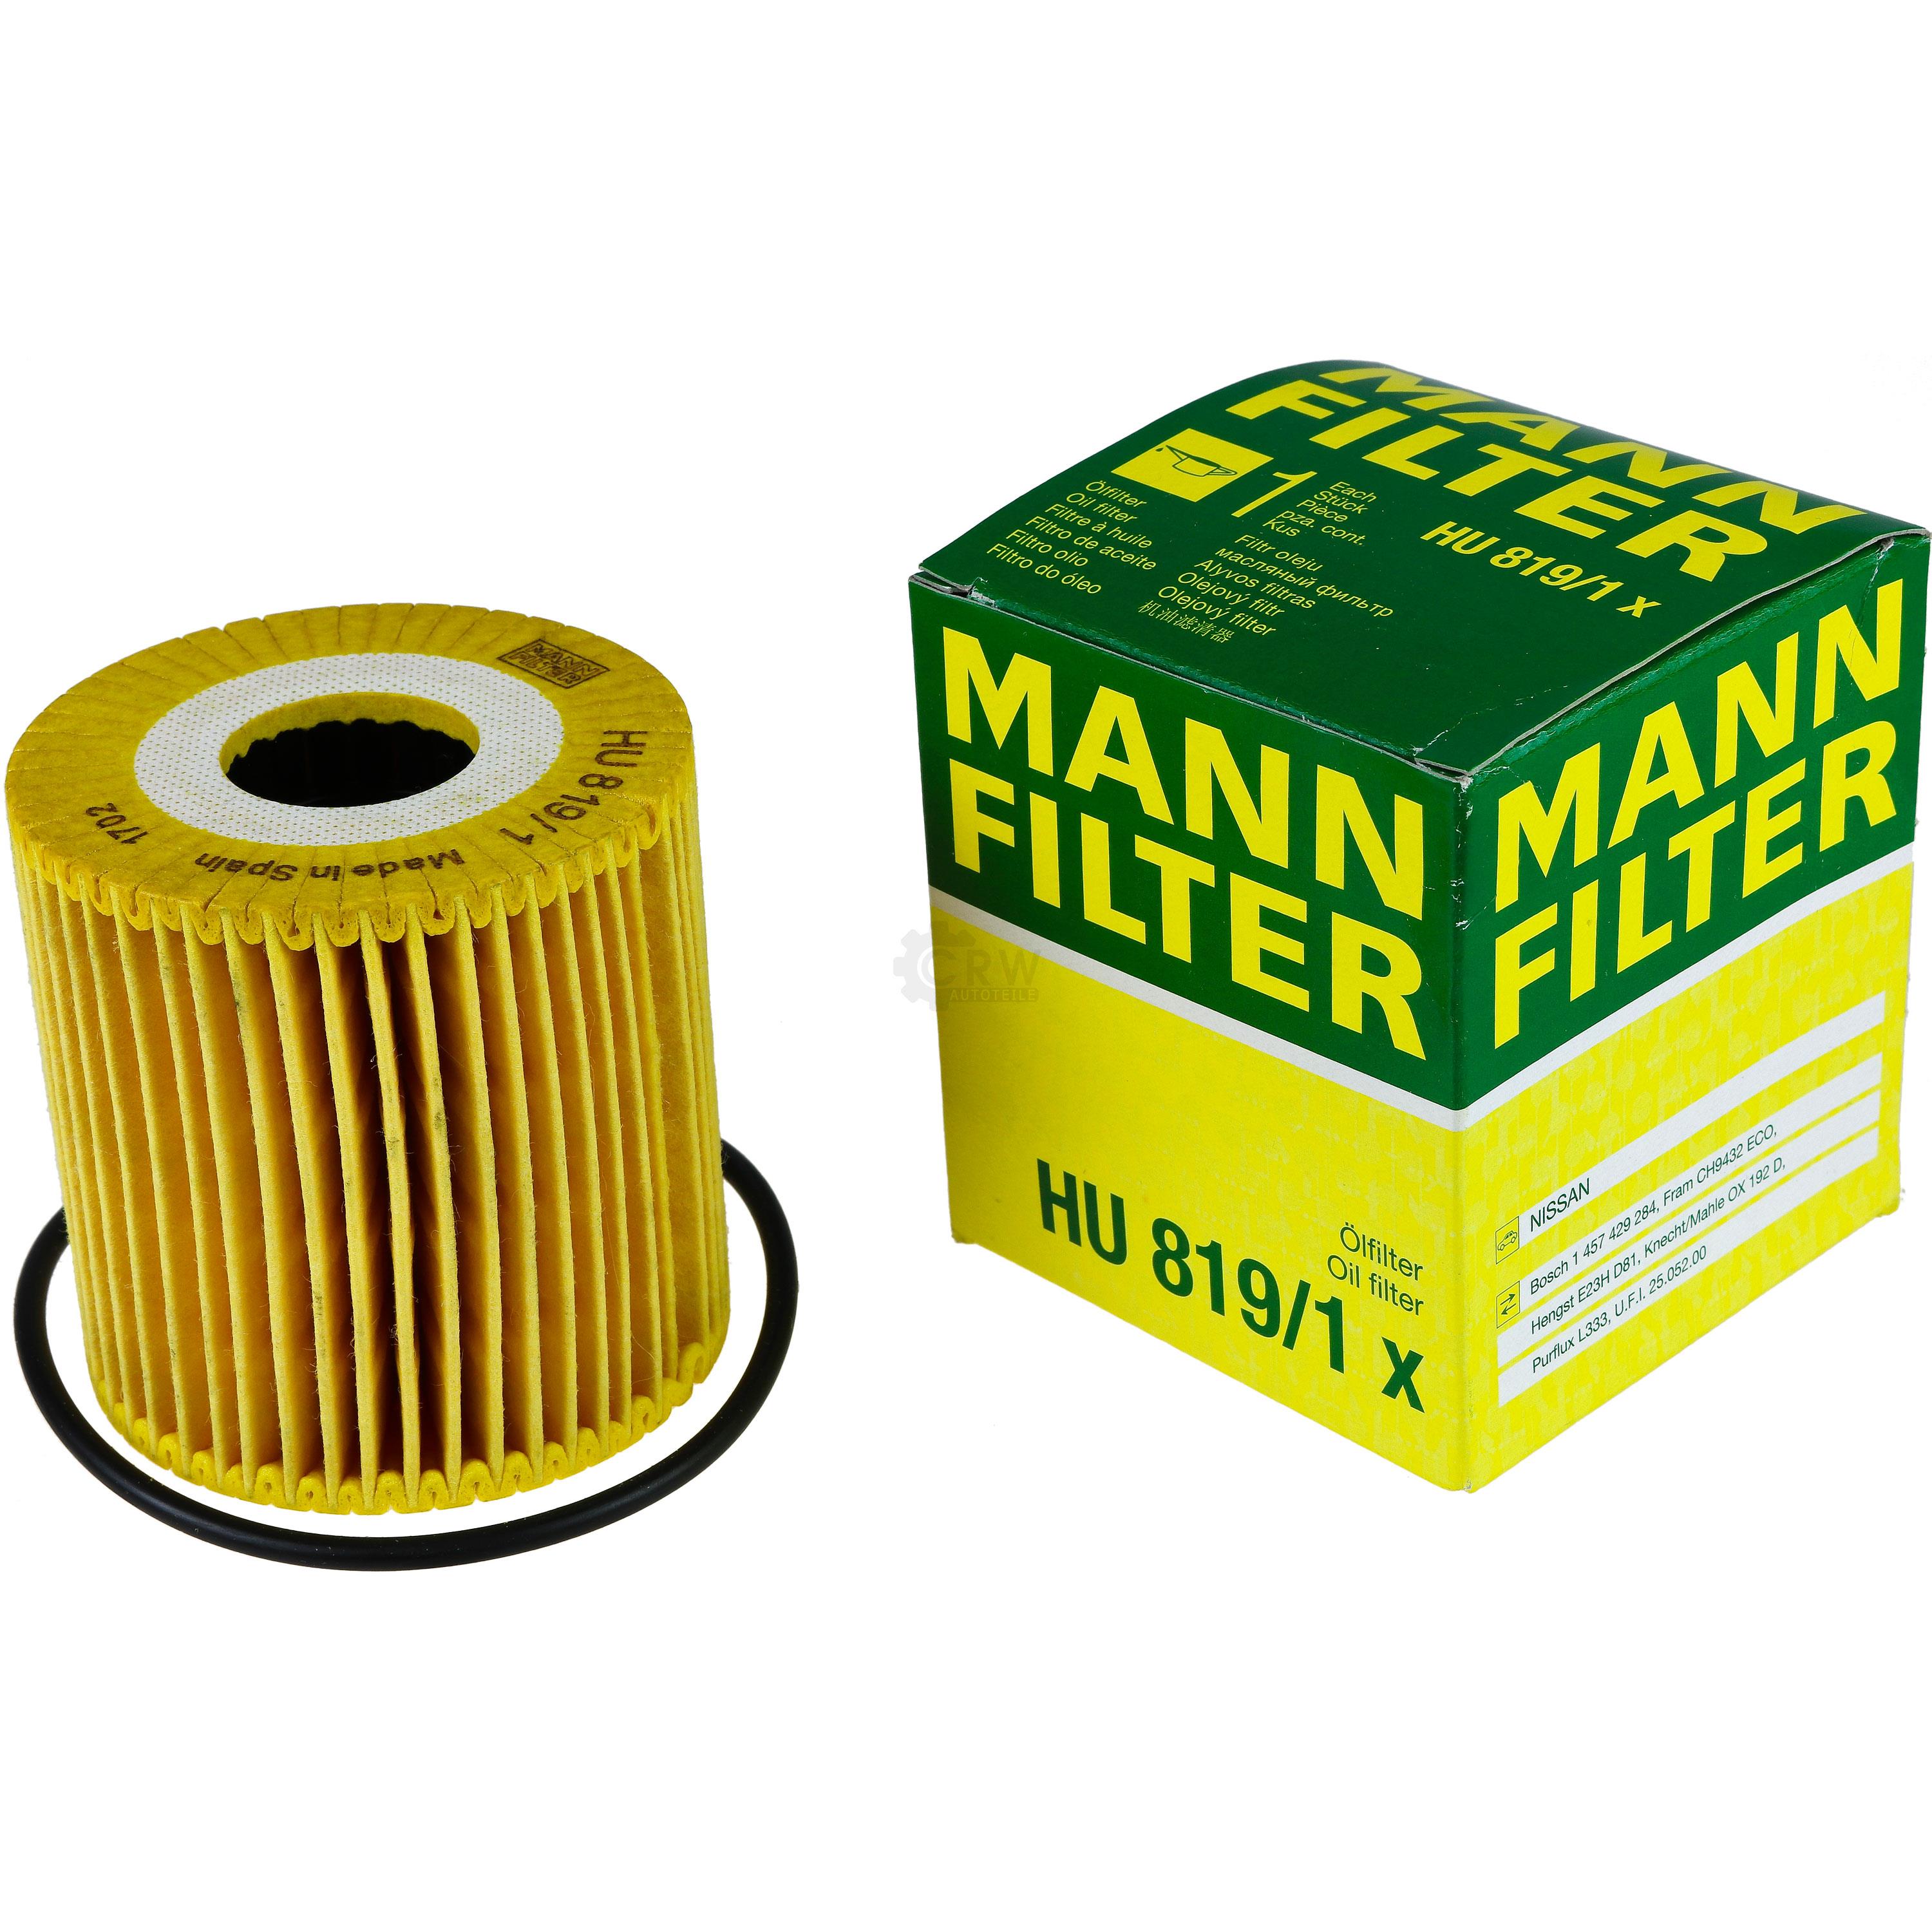 MANN-FILTER Ölfilter HU 819/1 x Oil Filter